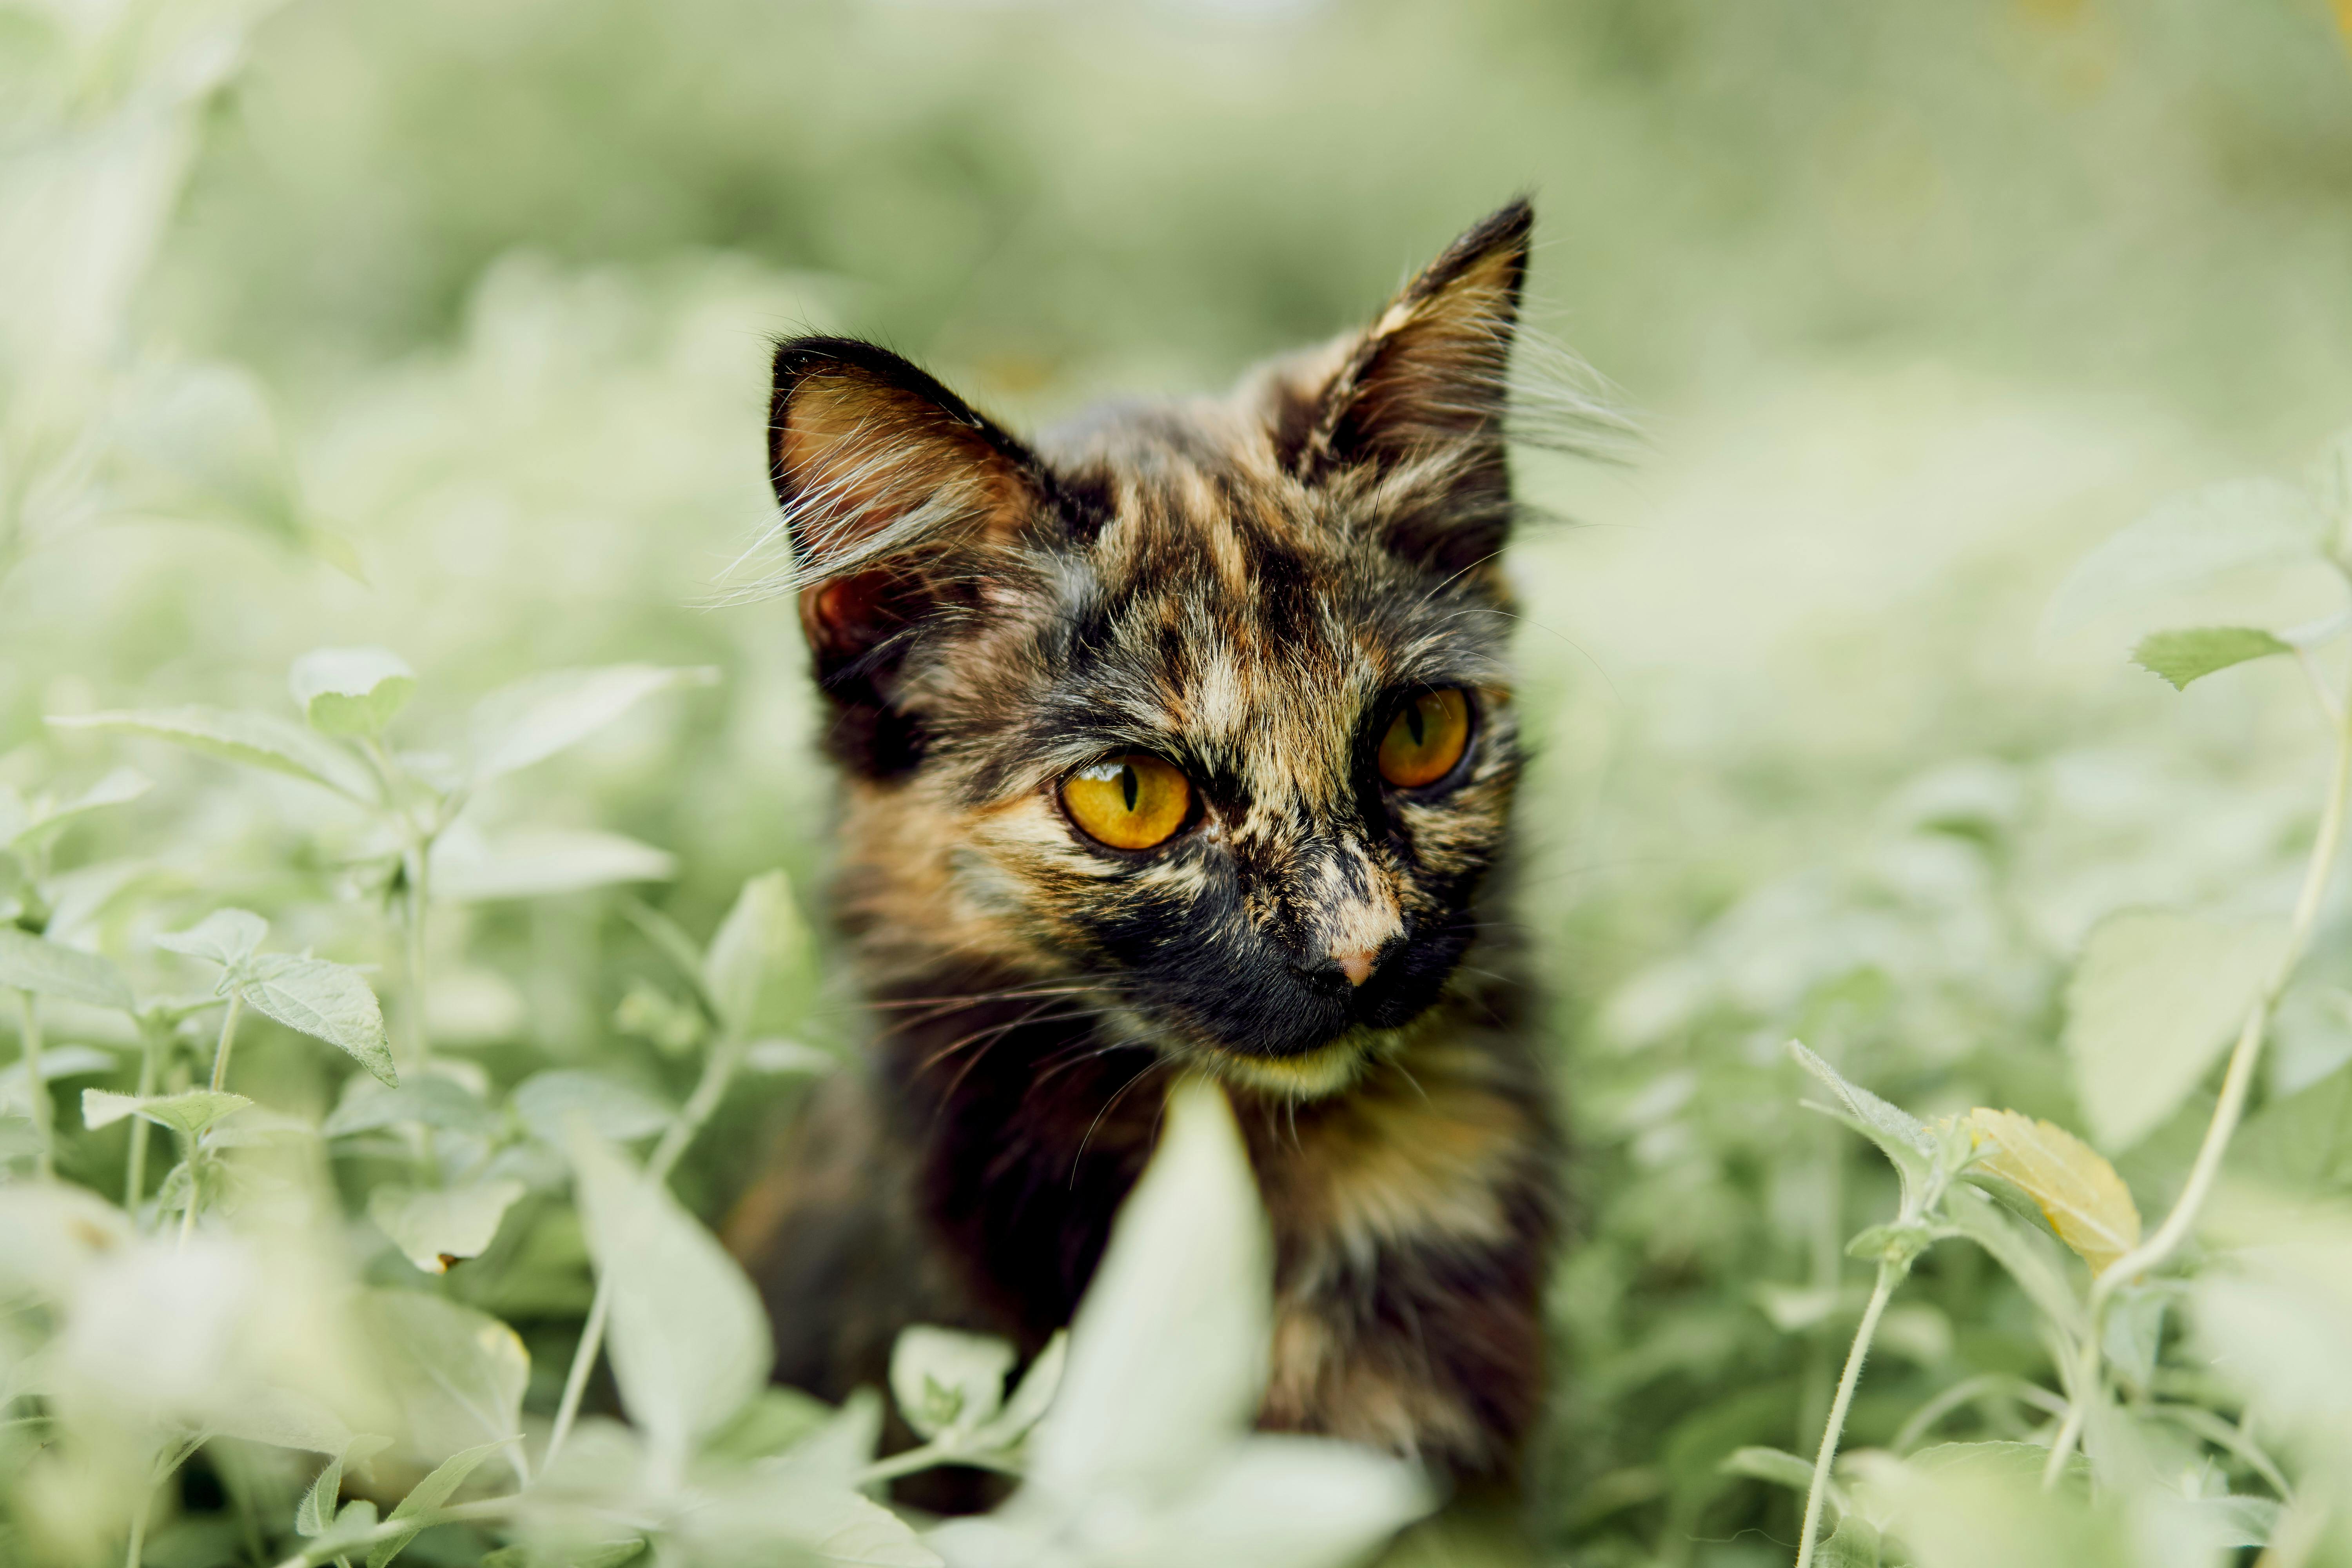 900+ Katzenauge Bilder und Fotos · Kostenlos Downloaden · Pexels